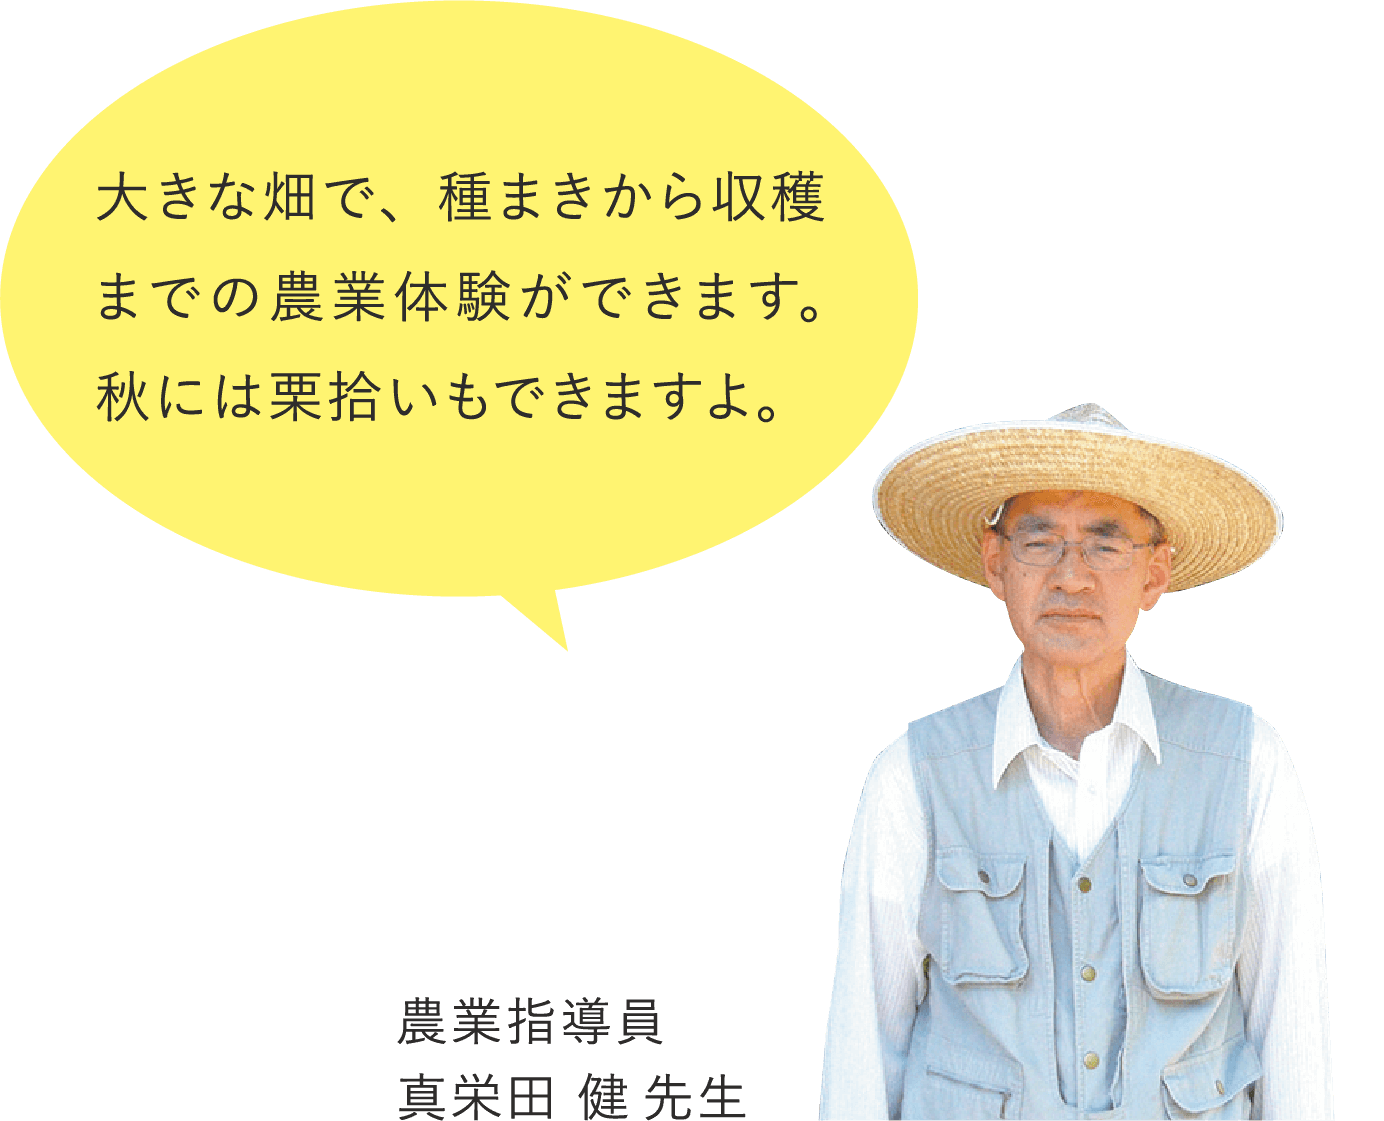 大きな畑で、種まきから収穫までの農業体験ができます。 秋には栗拾いもできますよ。 農業指導員 真栄田 健先生